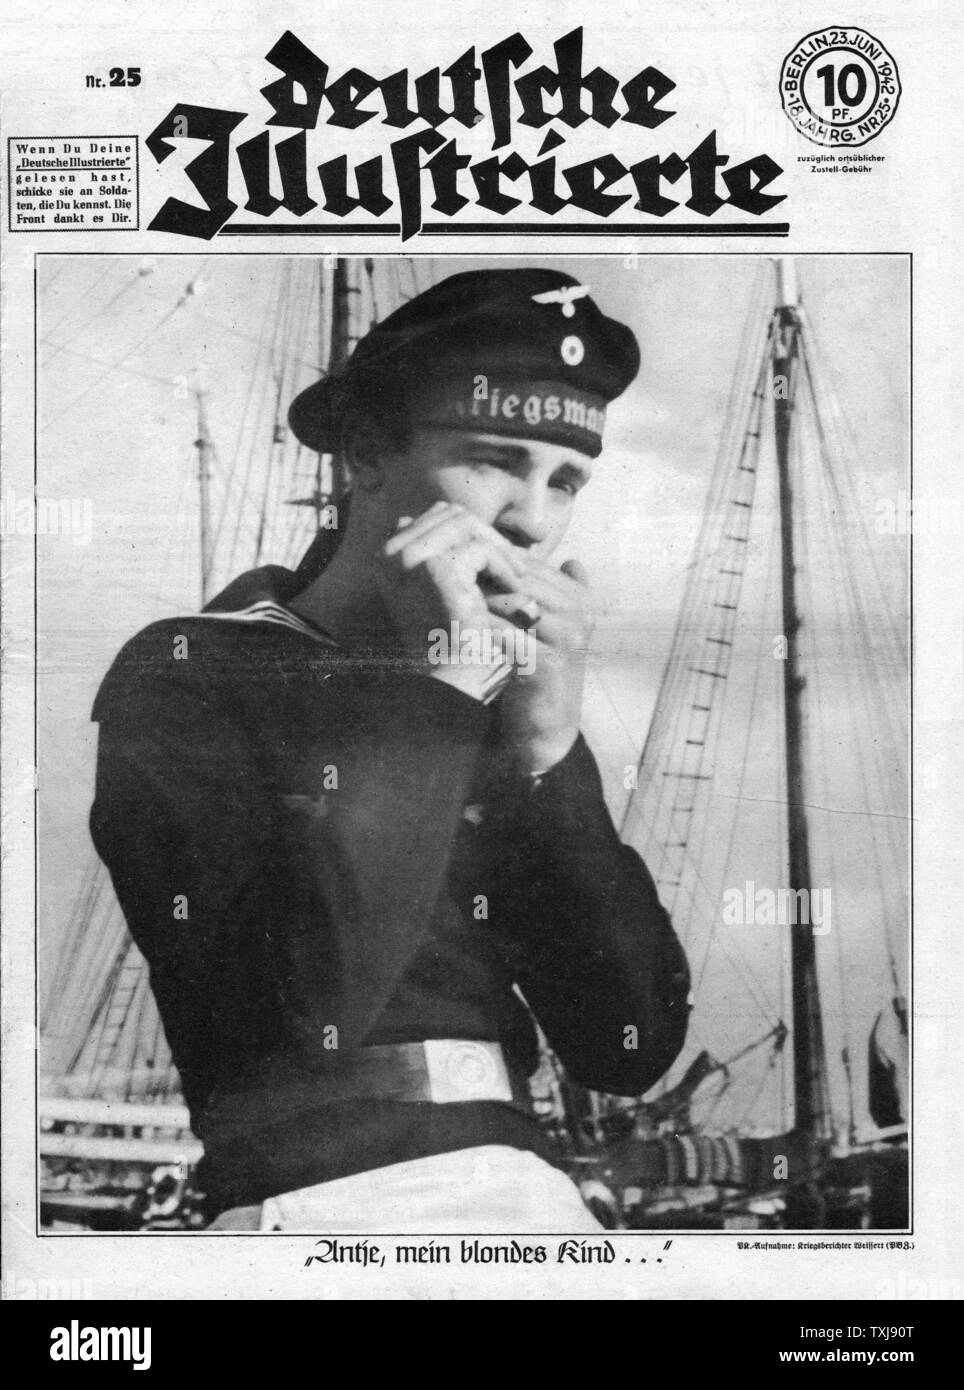 1942 Deutscher Illustrierte Kriegsmarine German navy sailor Stock Photo